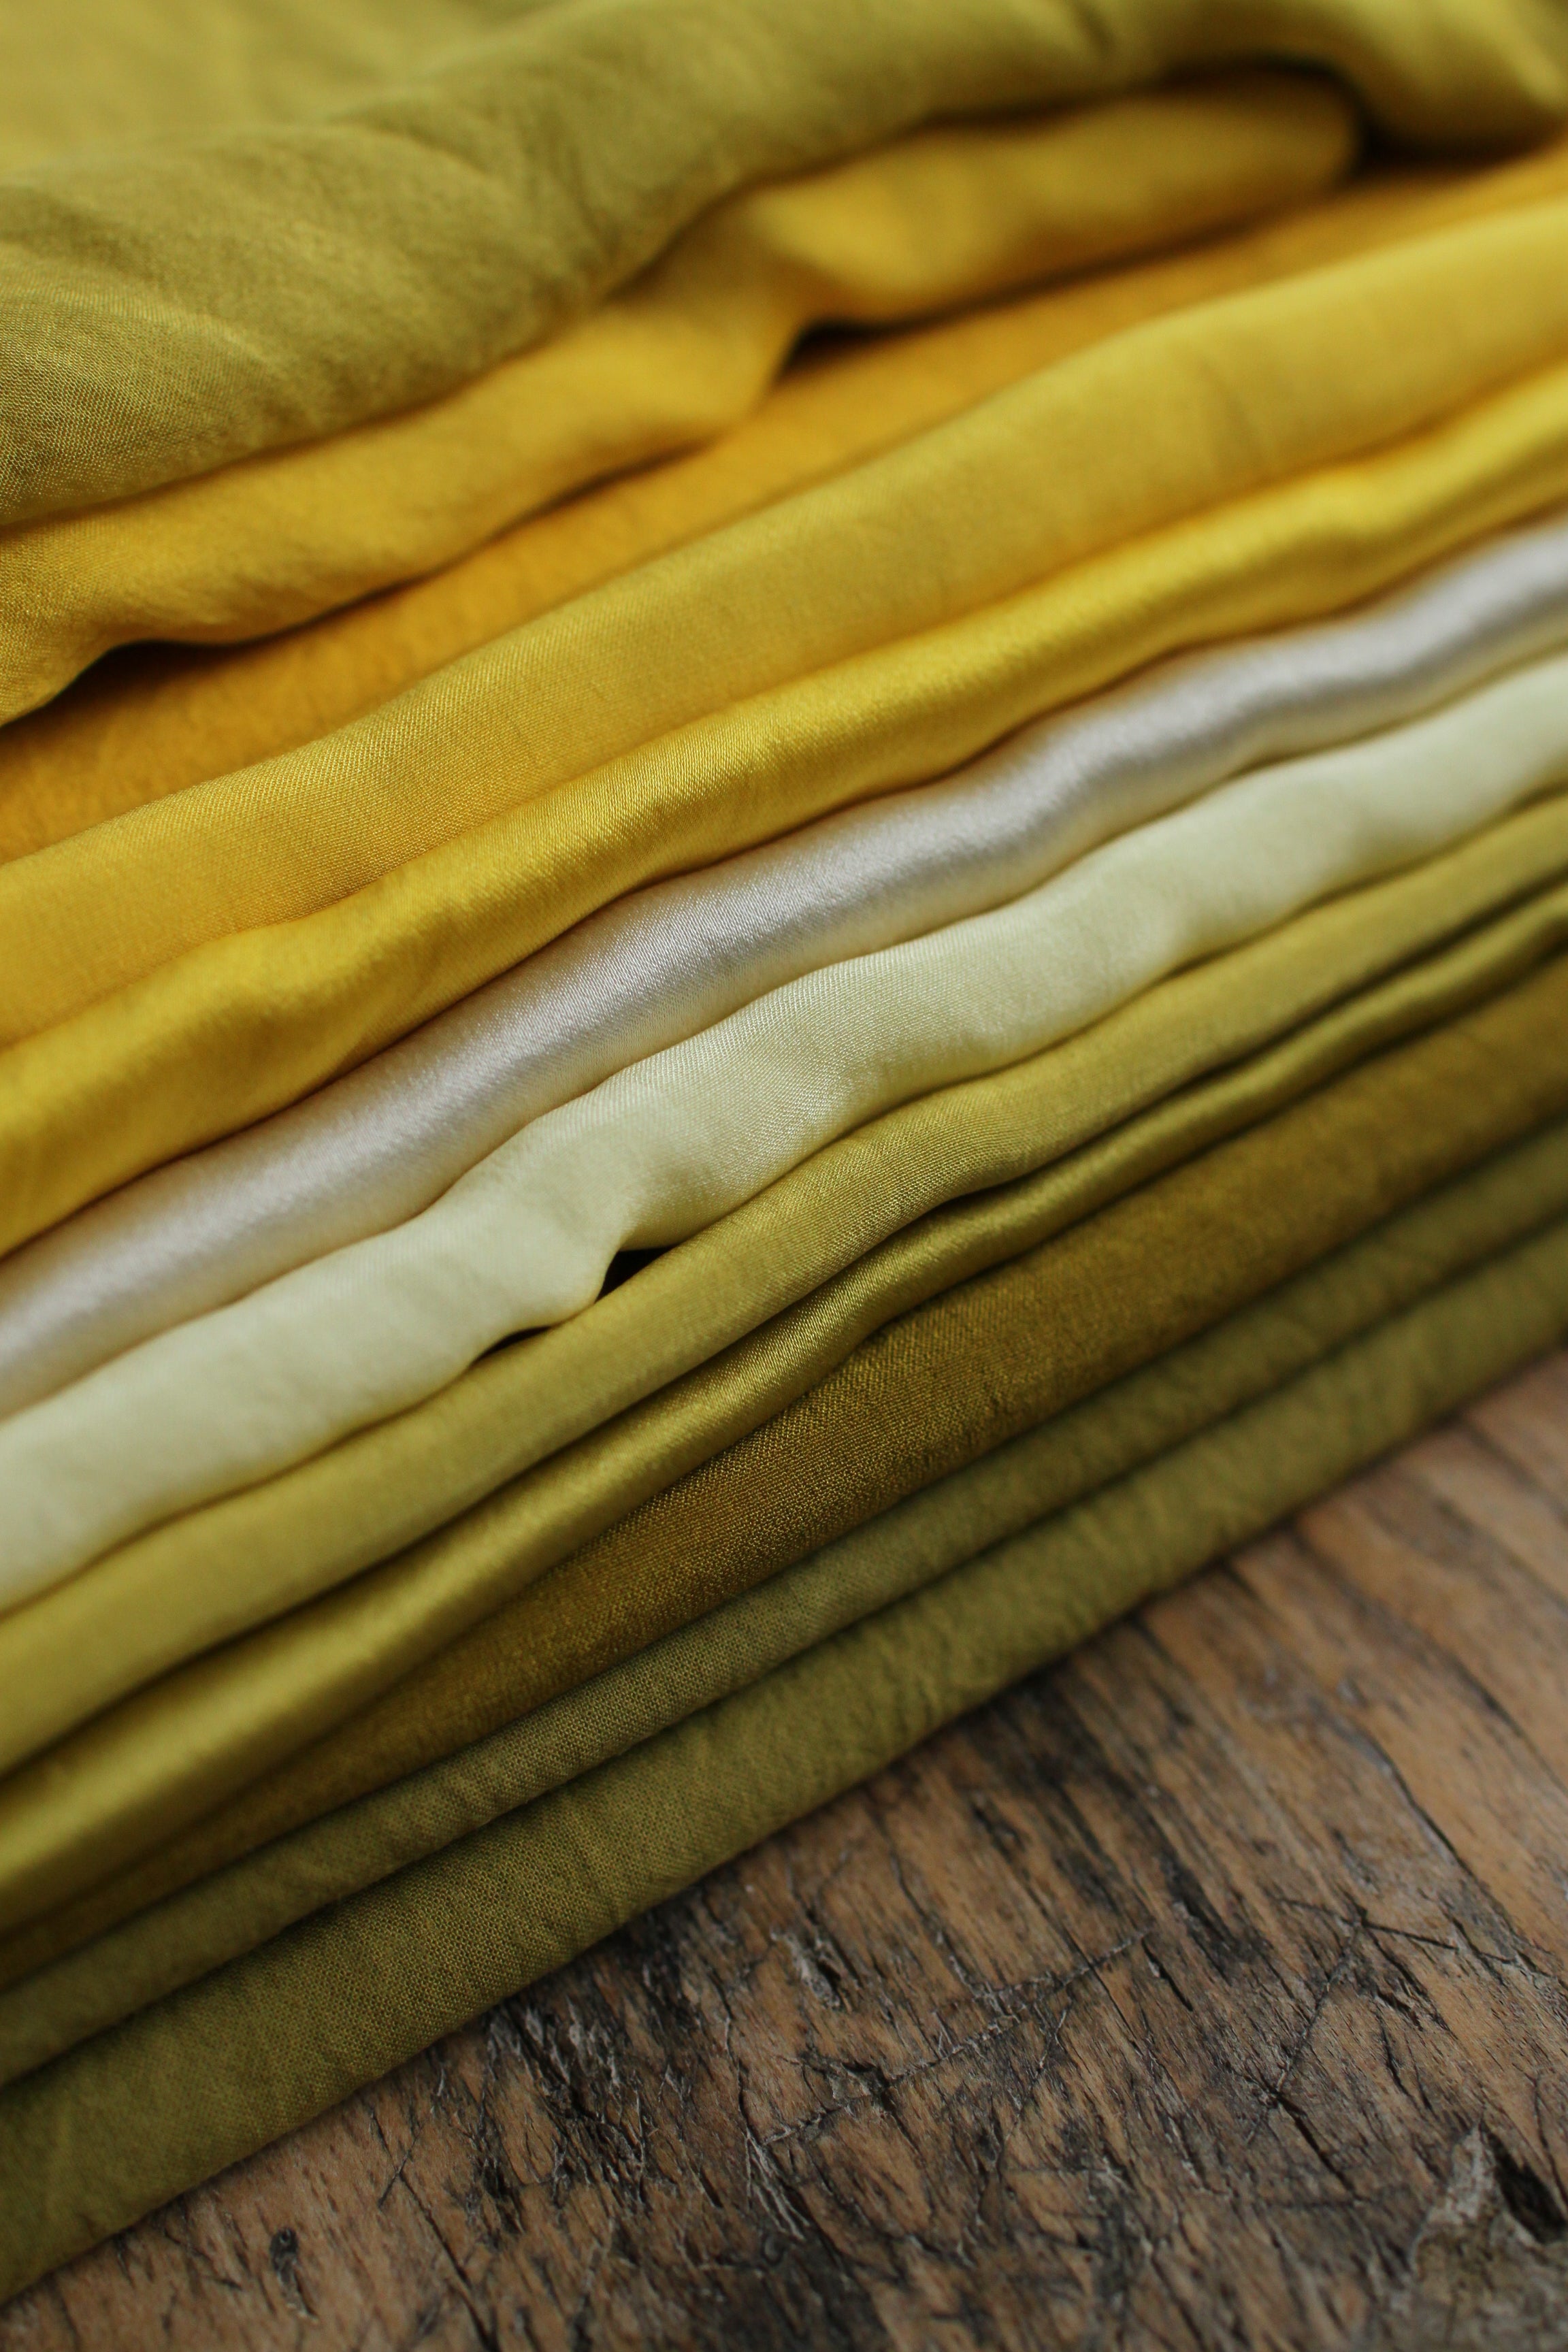 Ruban en popeline de coton - couleur "tournesol" - largeur 3cm, longueur 2,5m